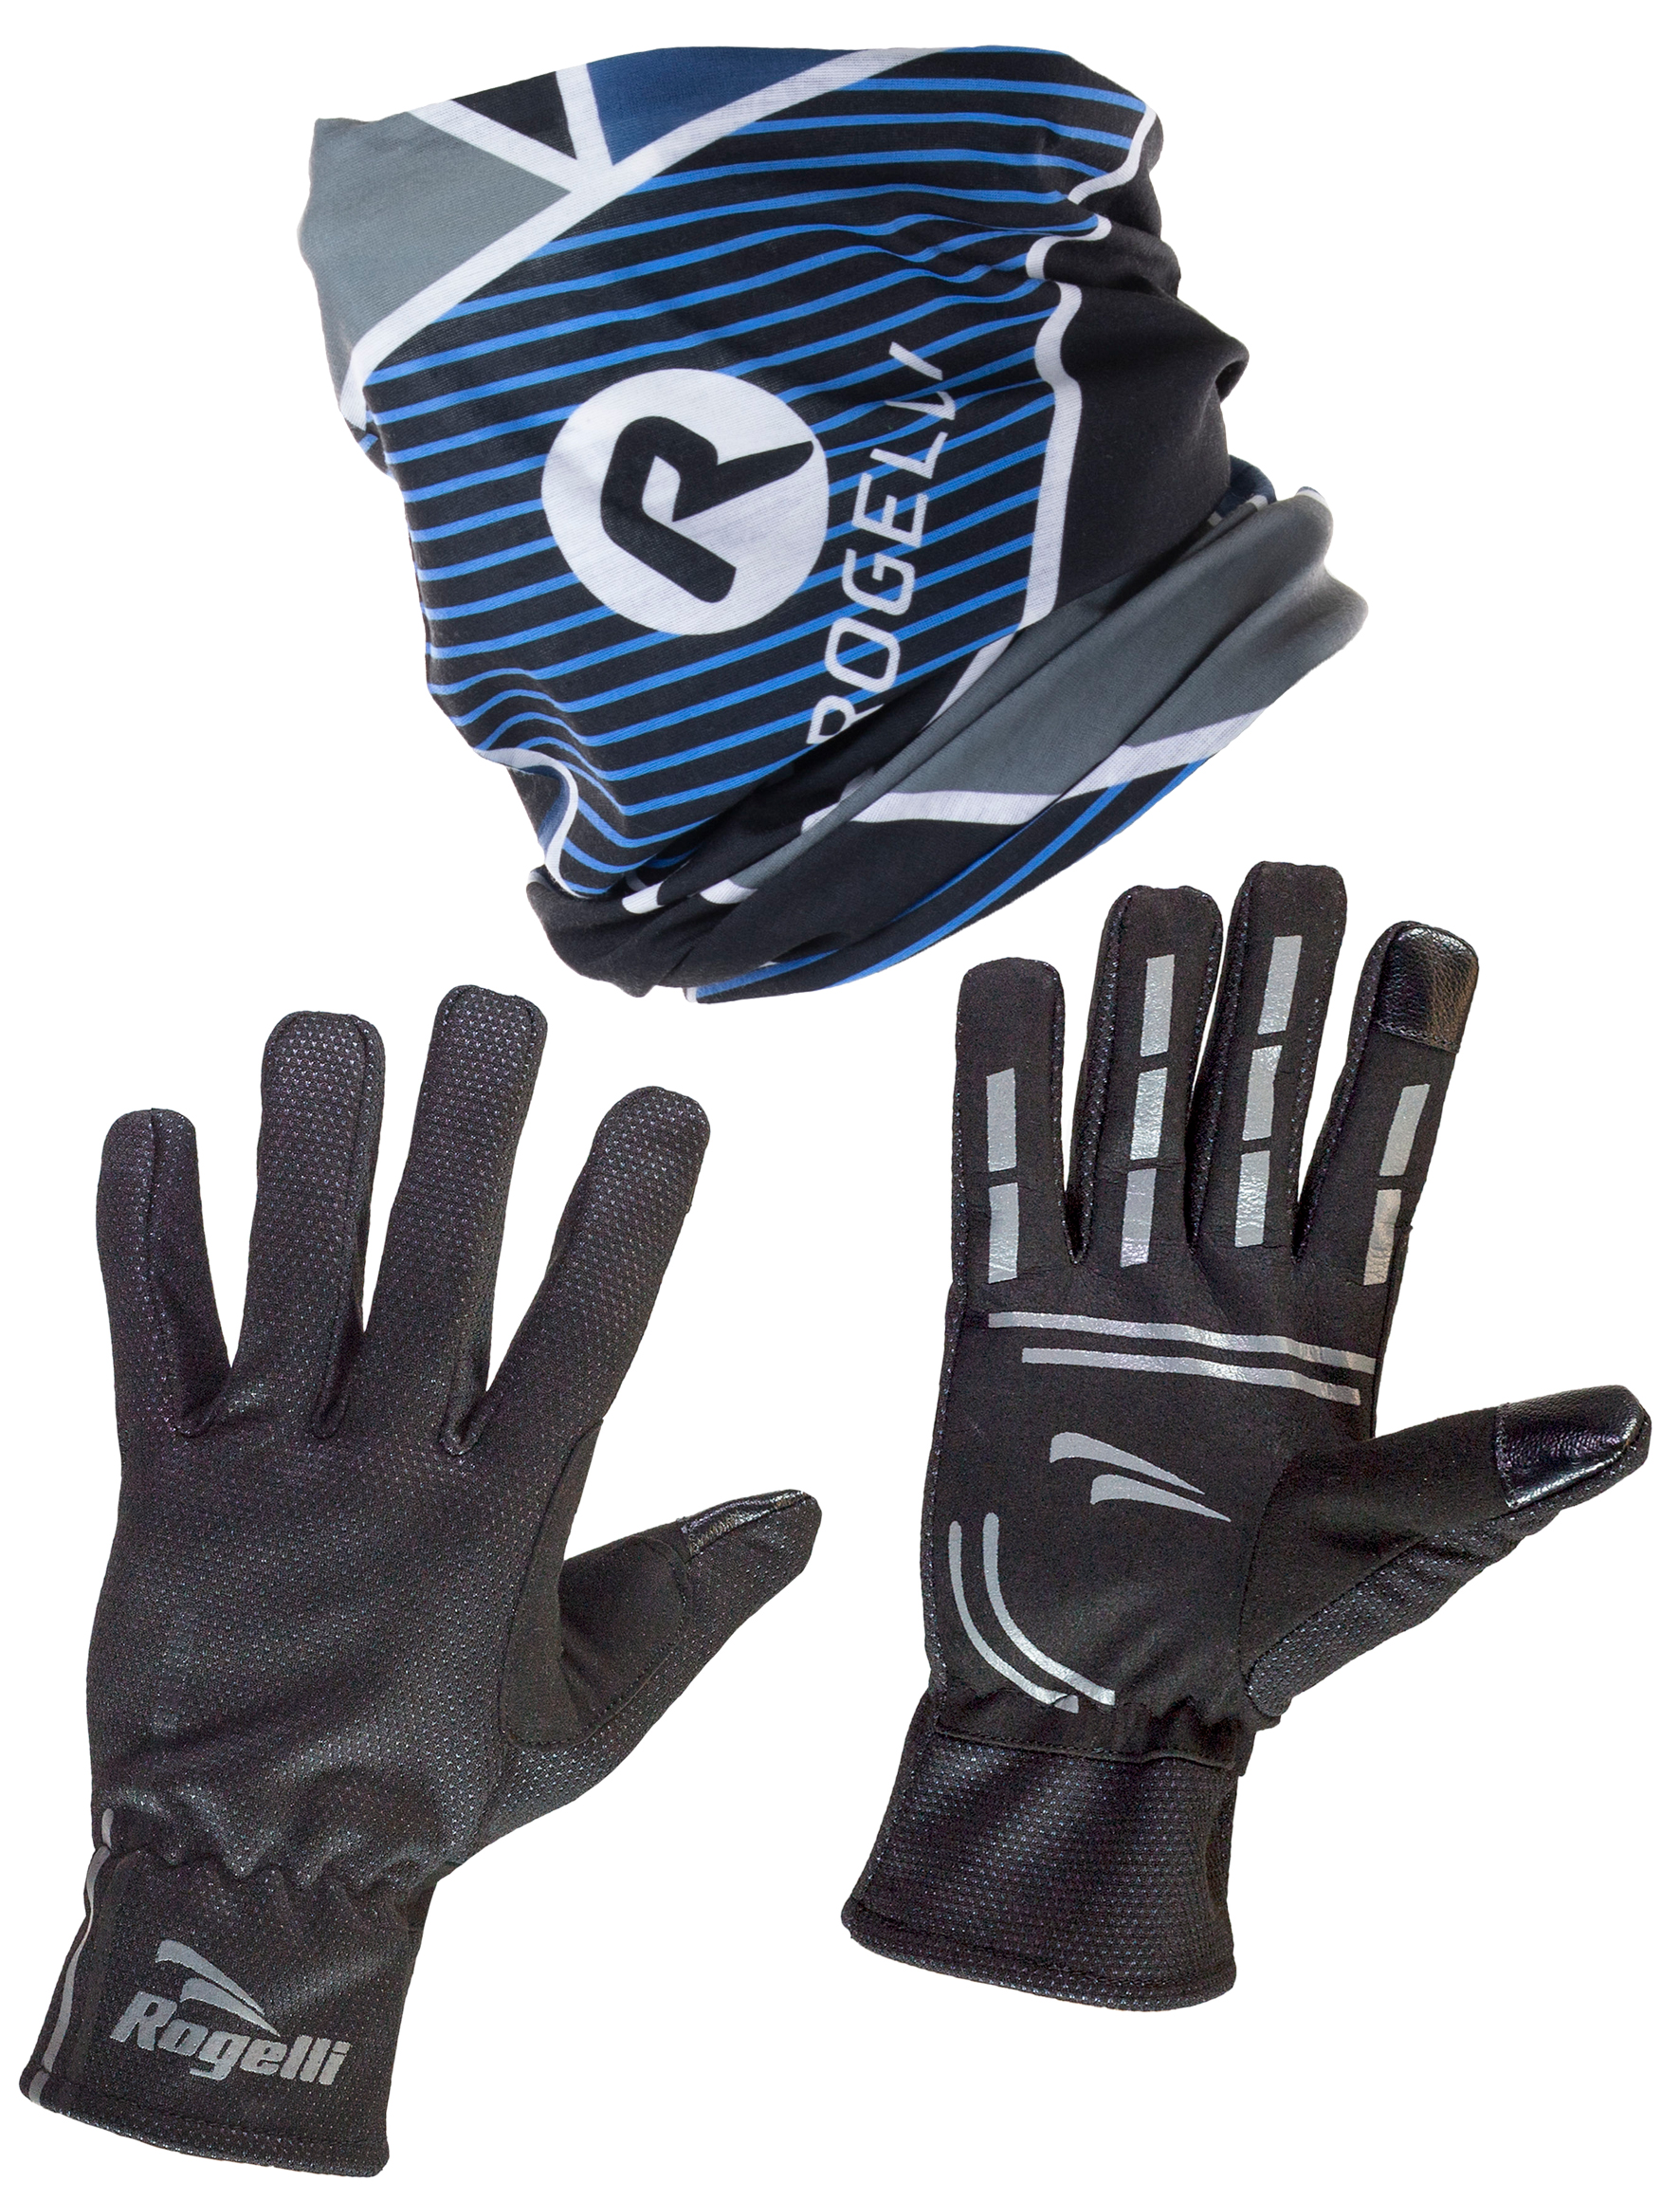 2 Delig setje Angoon Handschoenen en Scarf Blauw/zwart/grijs